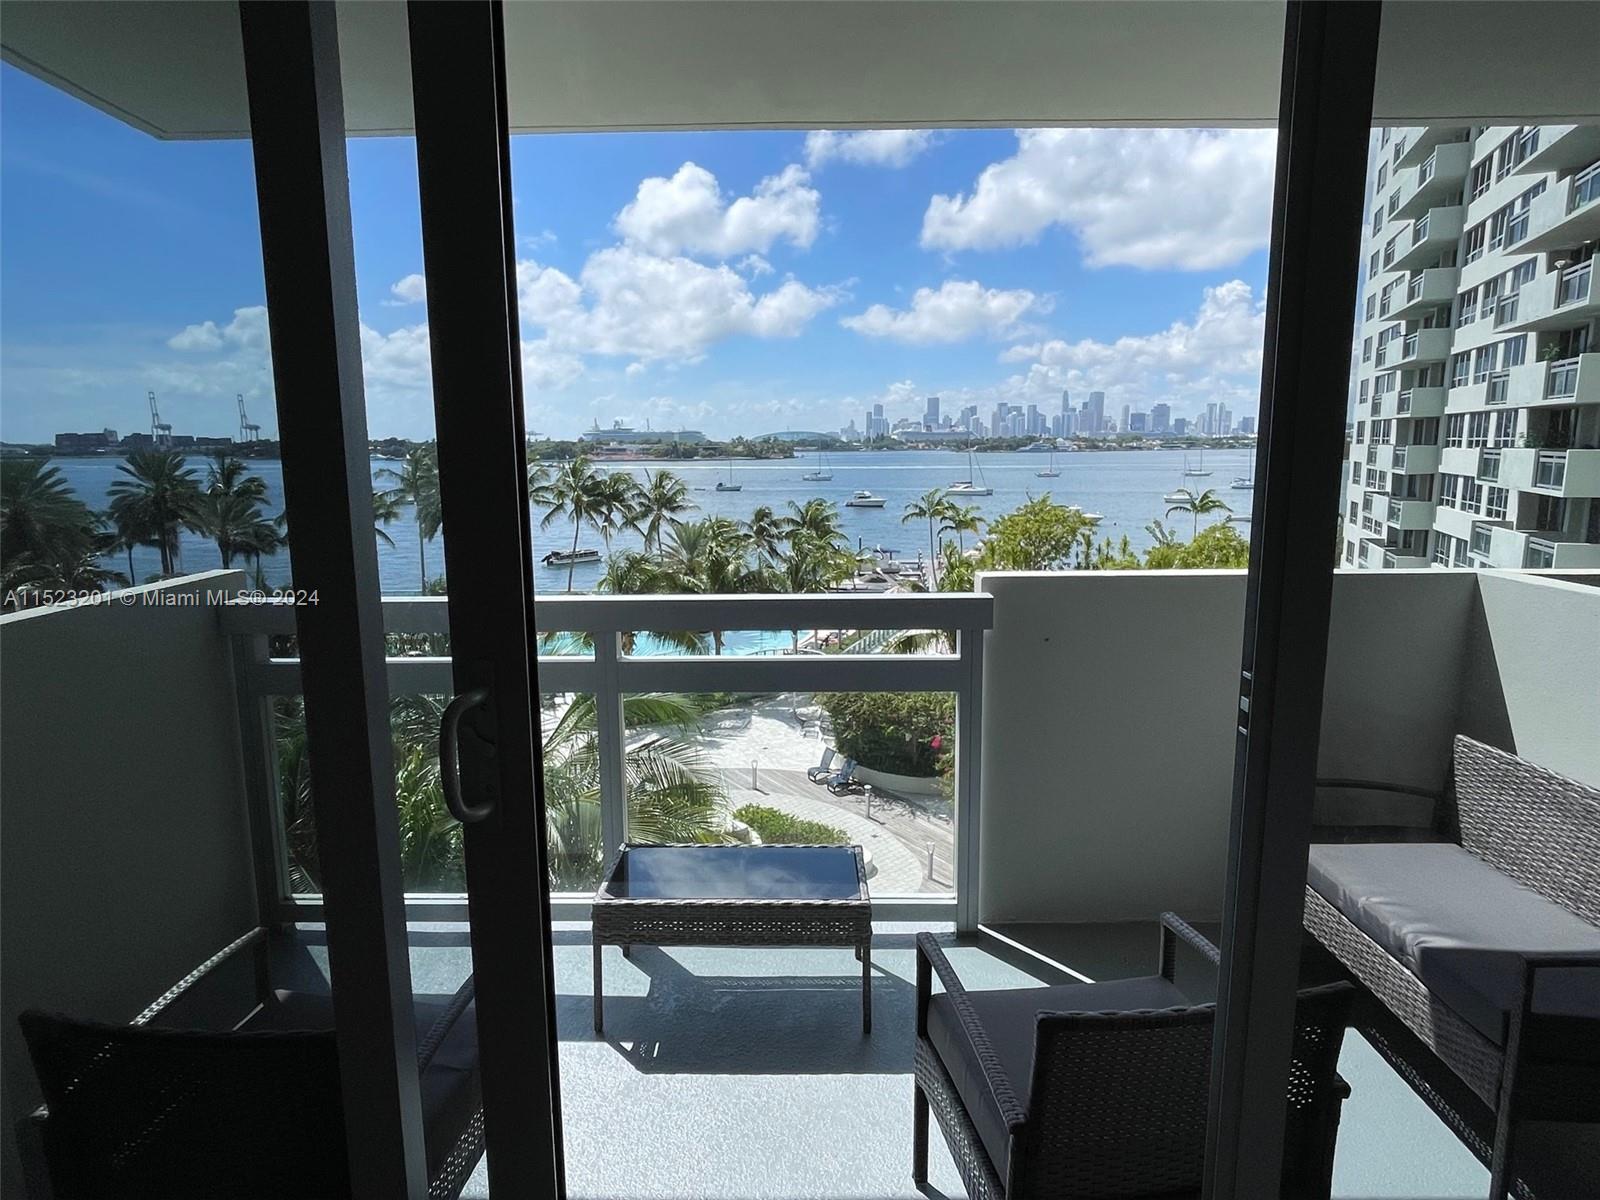 Rental Property at 1500 Bay Rd 522S, Miami Beach, Miami-Dade County, Florida - Bedrooms: 2 
Bathrooms: 2  - $4,800 MO.